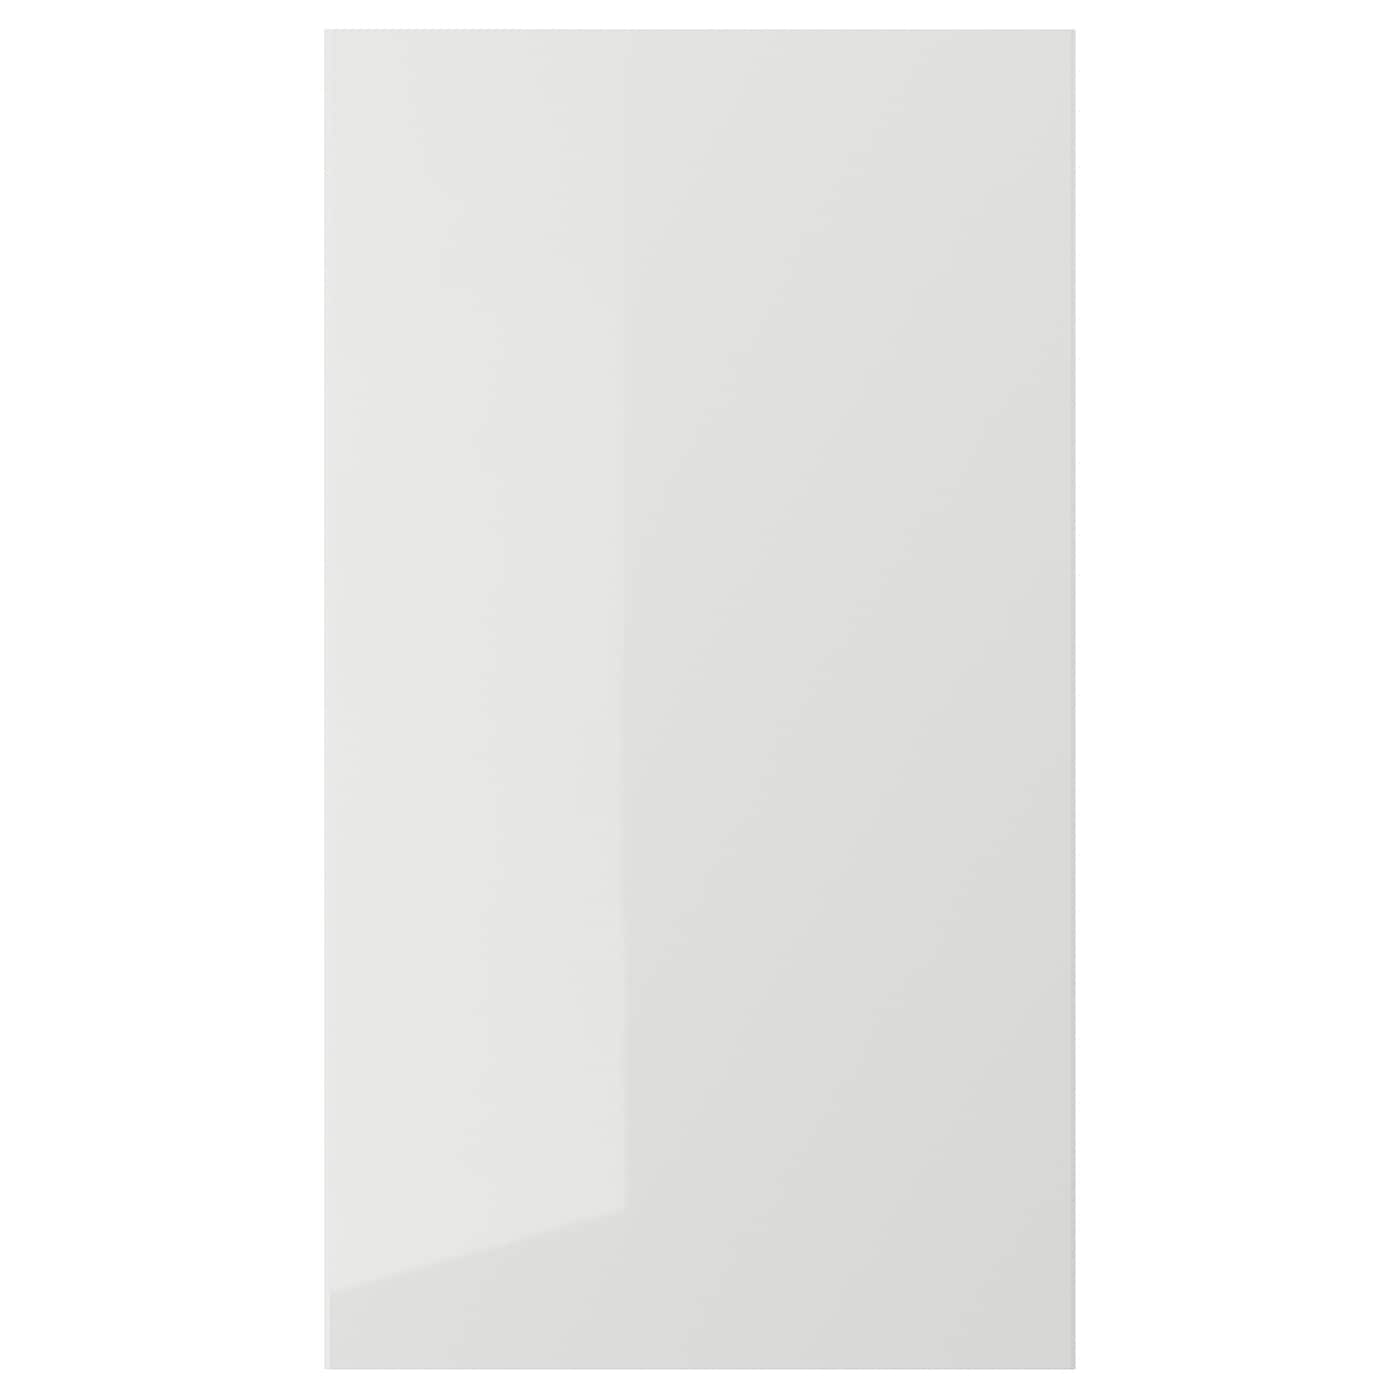 Передняя панель для посудомоечной машины - RINGHULT IKEA /РИНГУЛЬТ ИКЕА, 45х80  см, серый